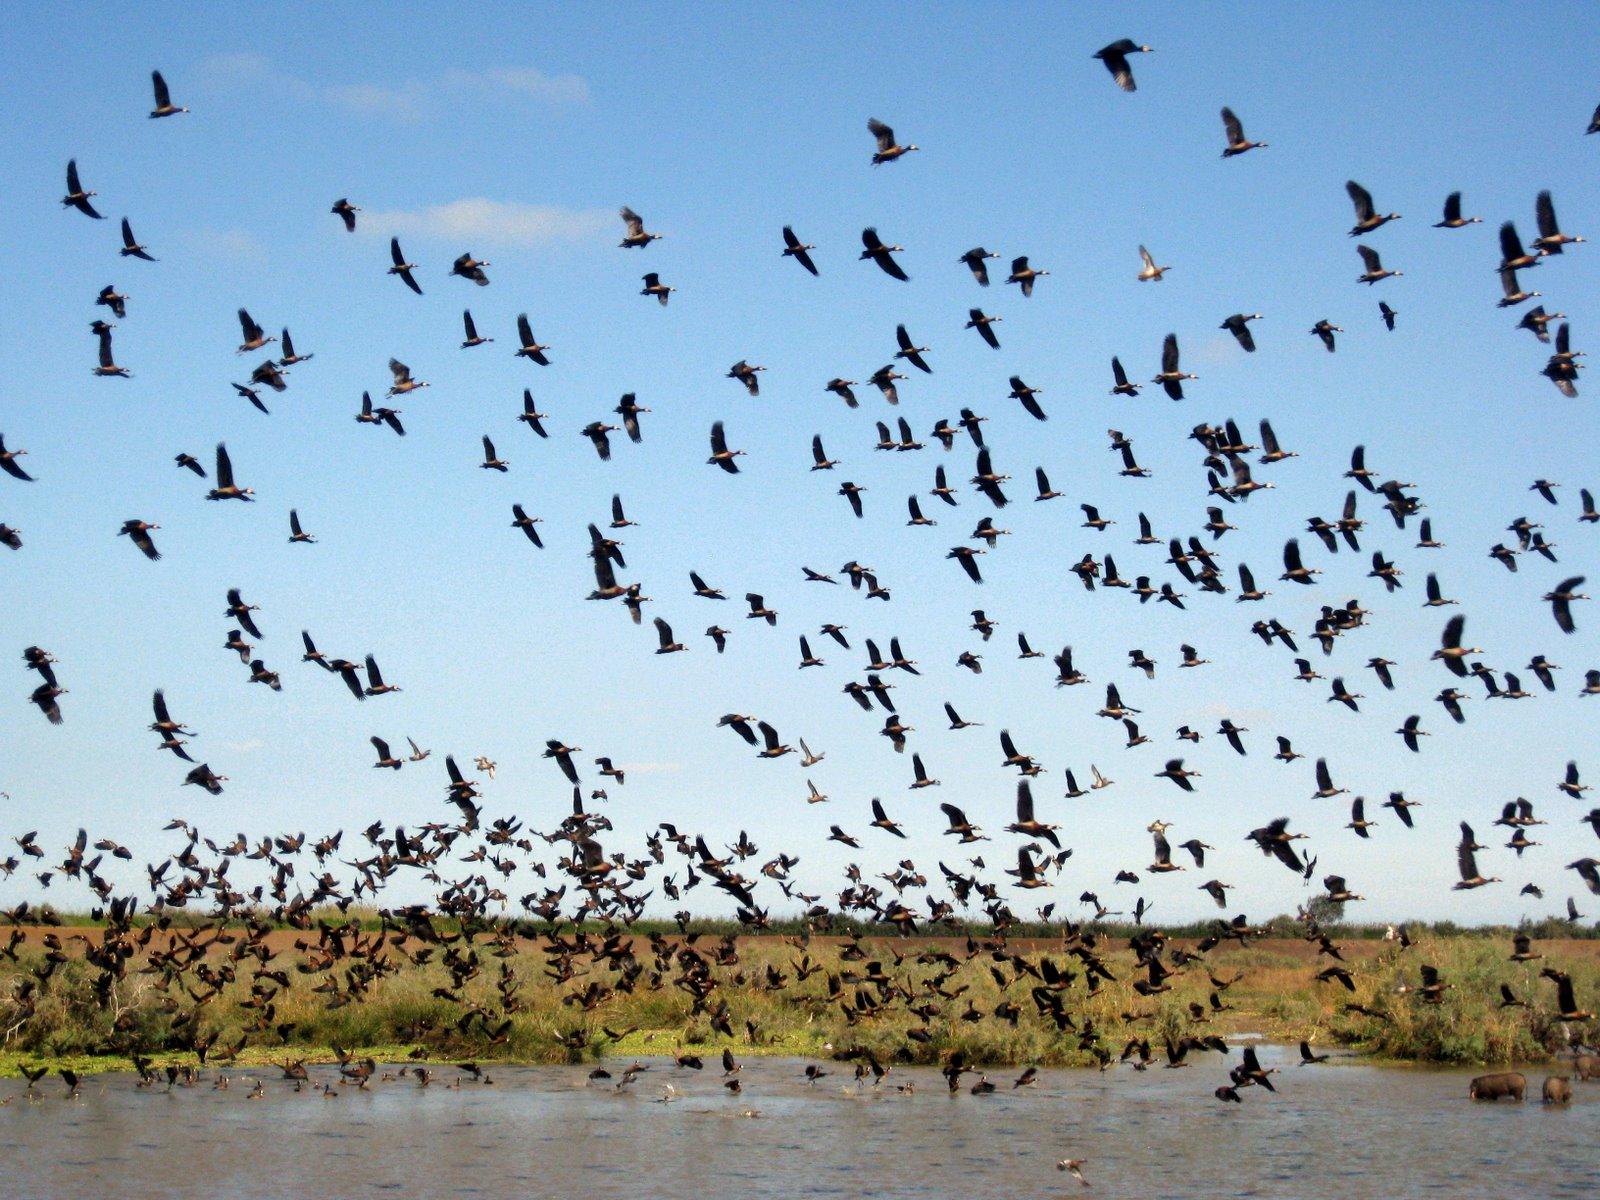 朱贾国家鸟类保护区 Djoudj National Bird Sanctuary